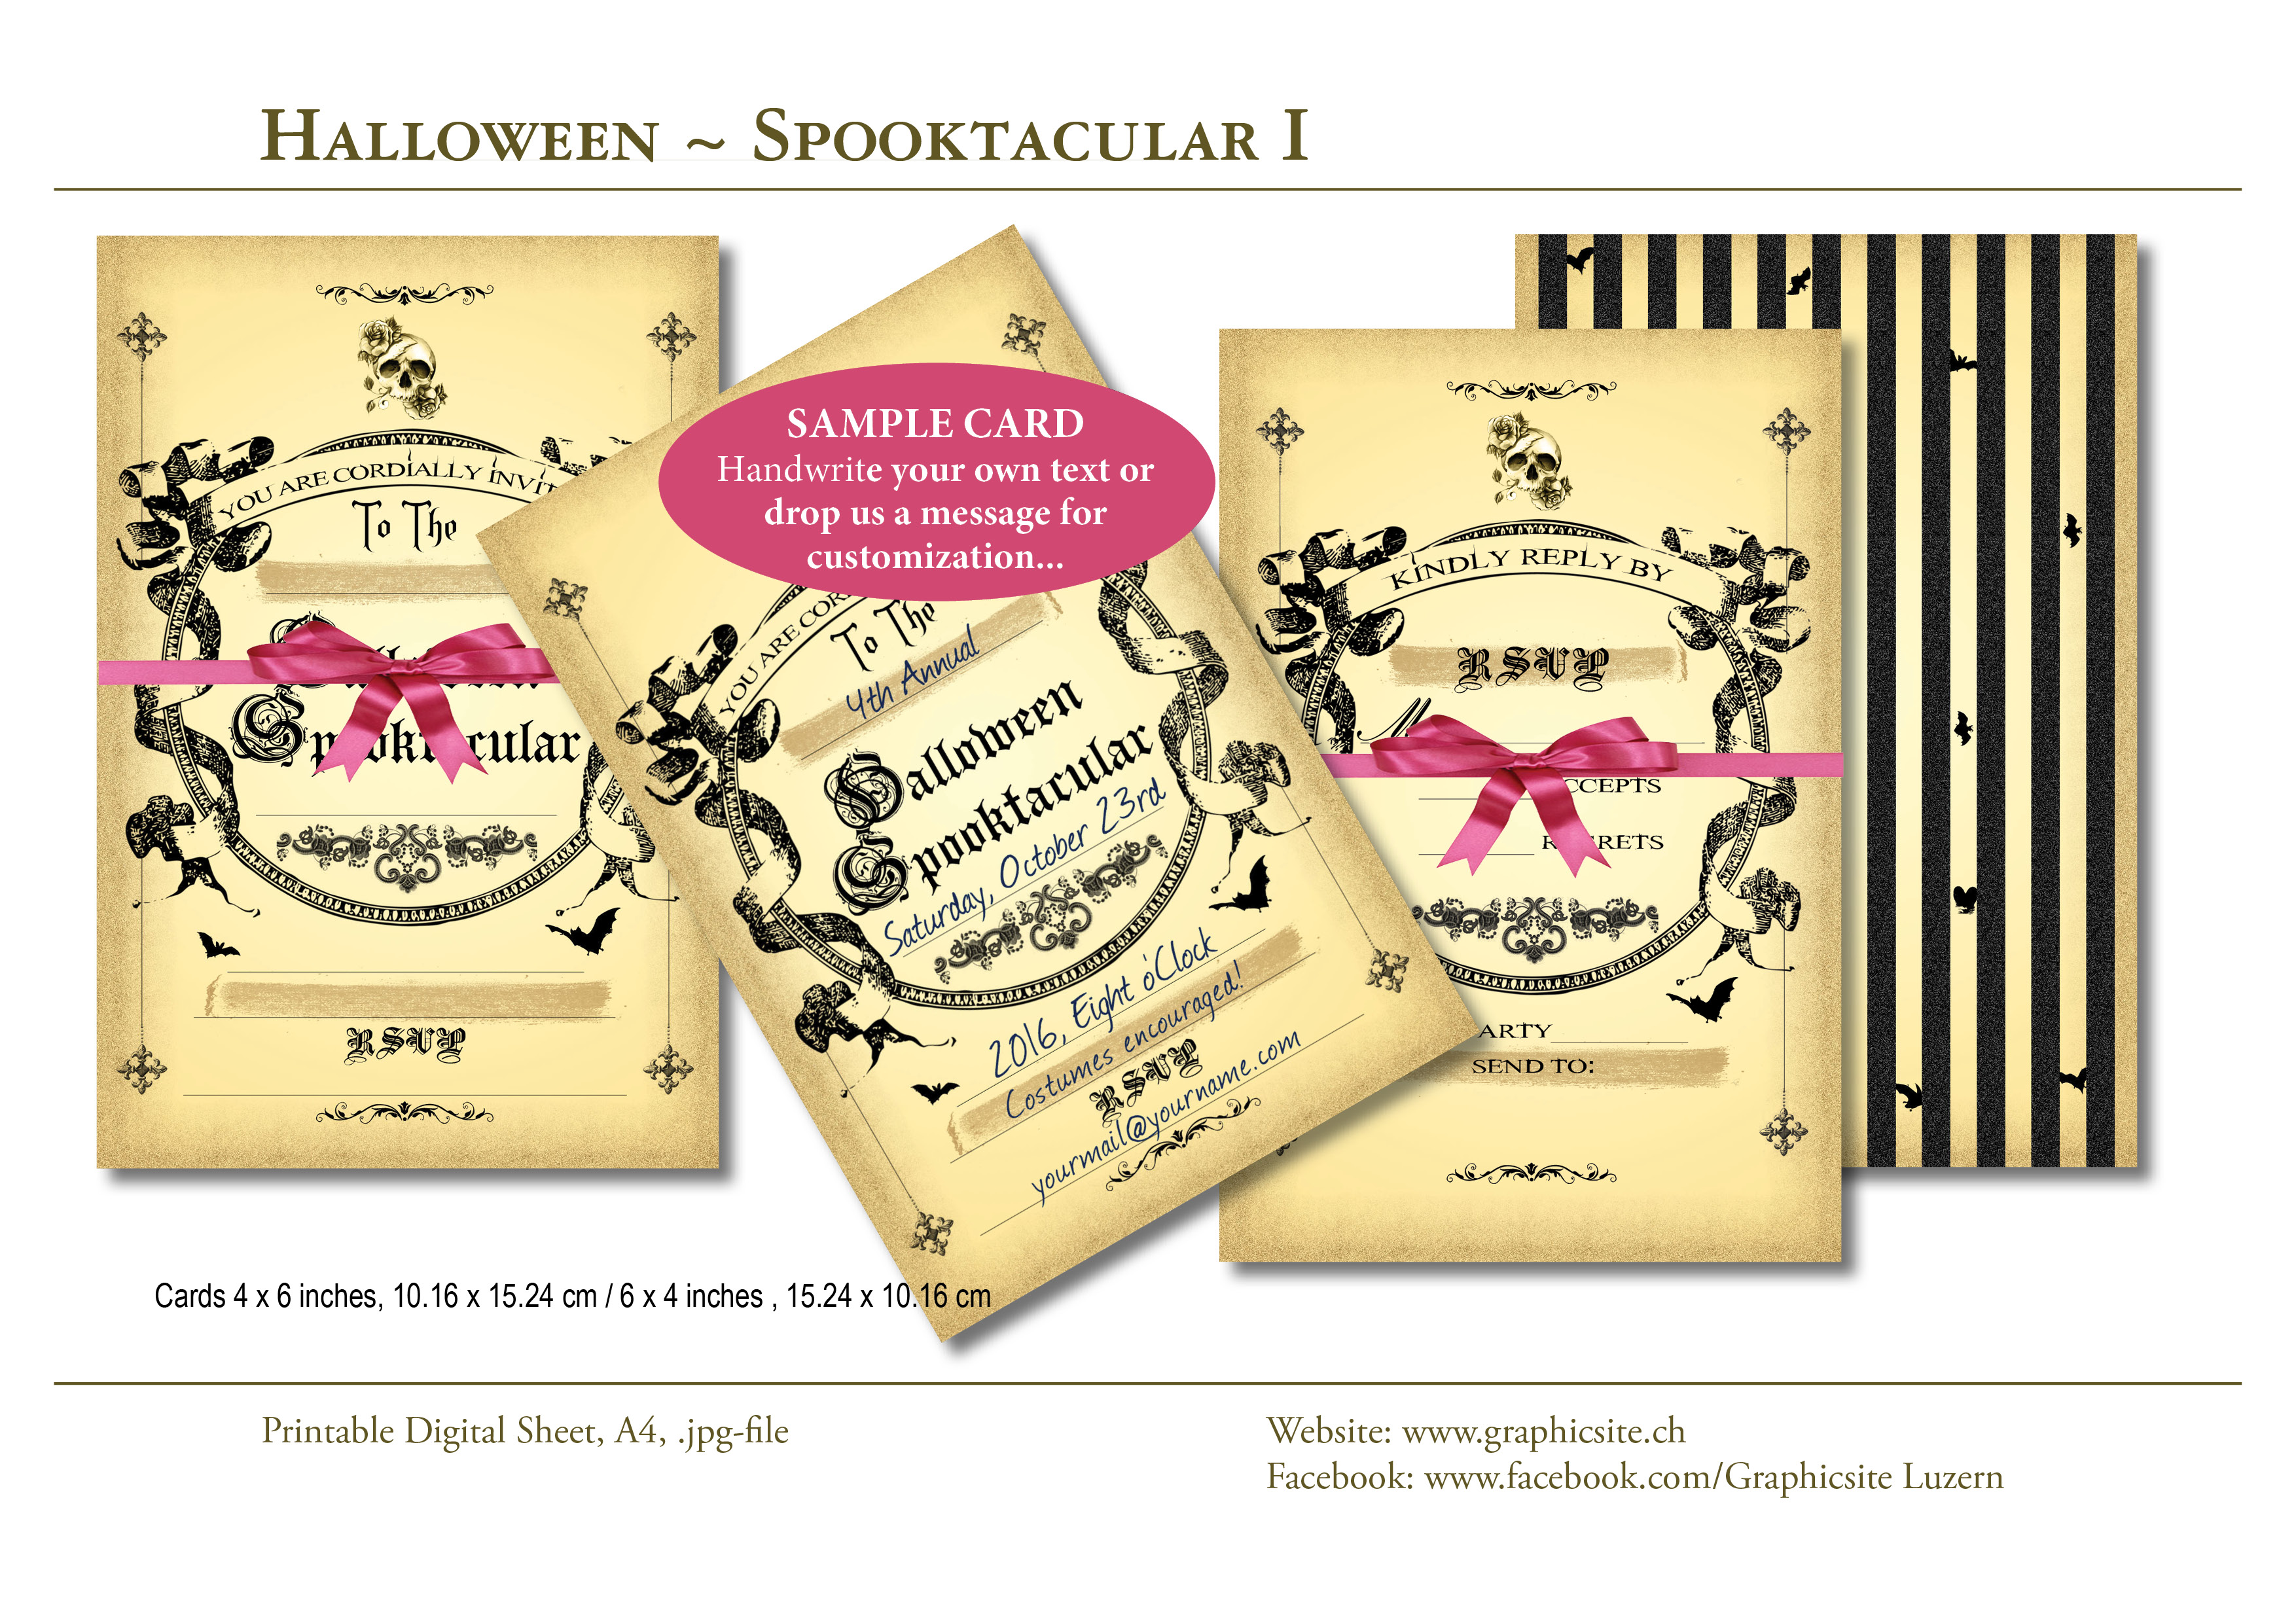 Karten selber drucken - Halloween Spooktacular - 4x6-Karten